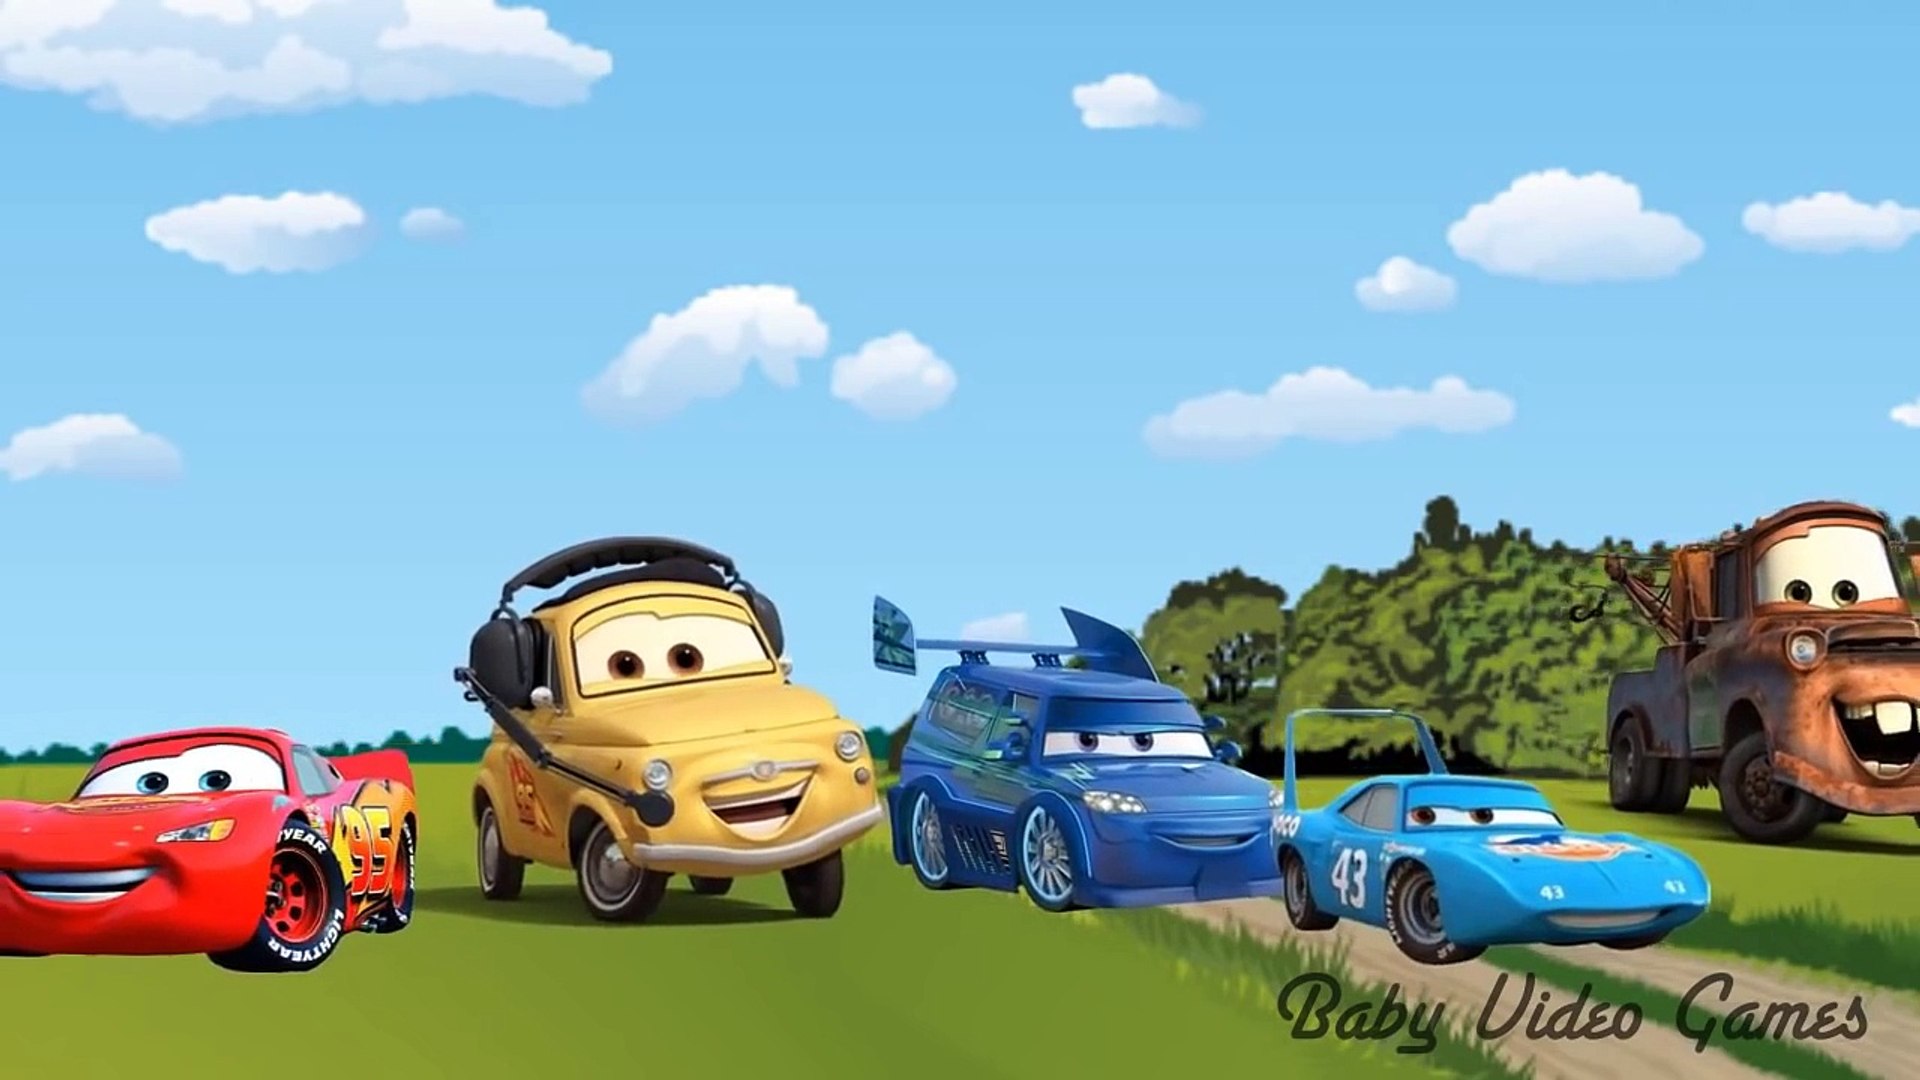 ⁣Finger Family Cars Cars Cartoon Movie for Children Cars Songs